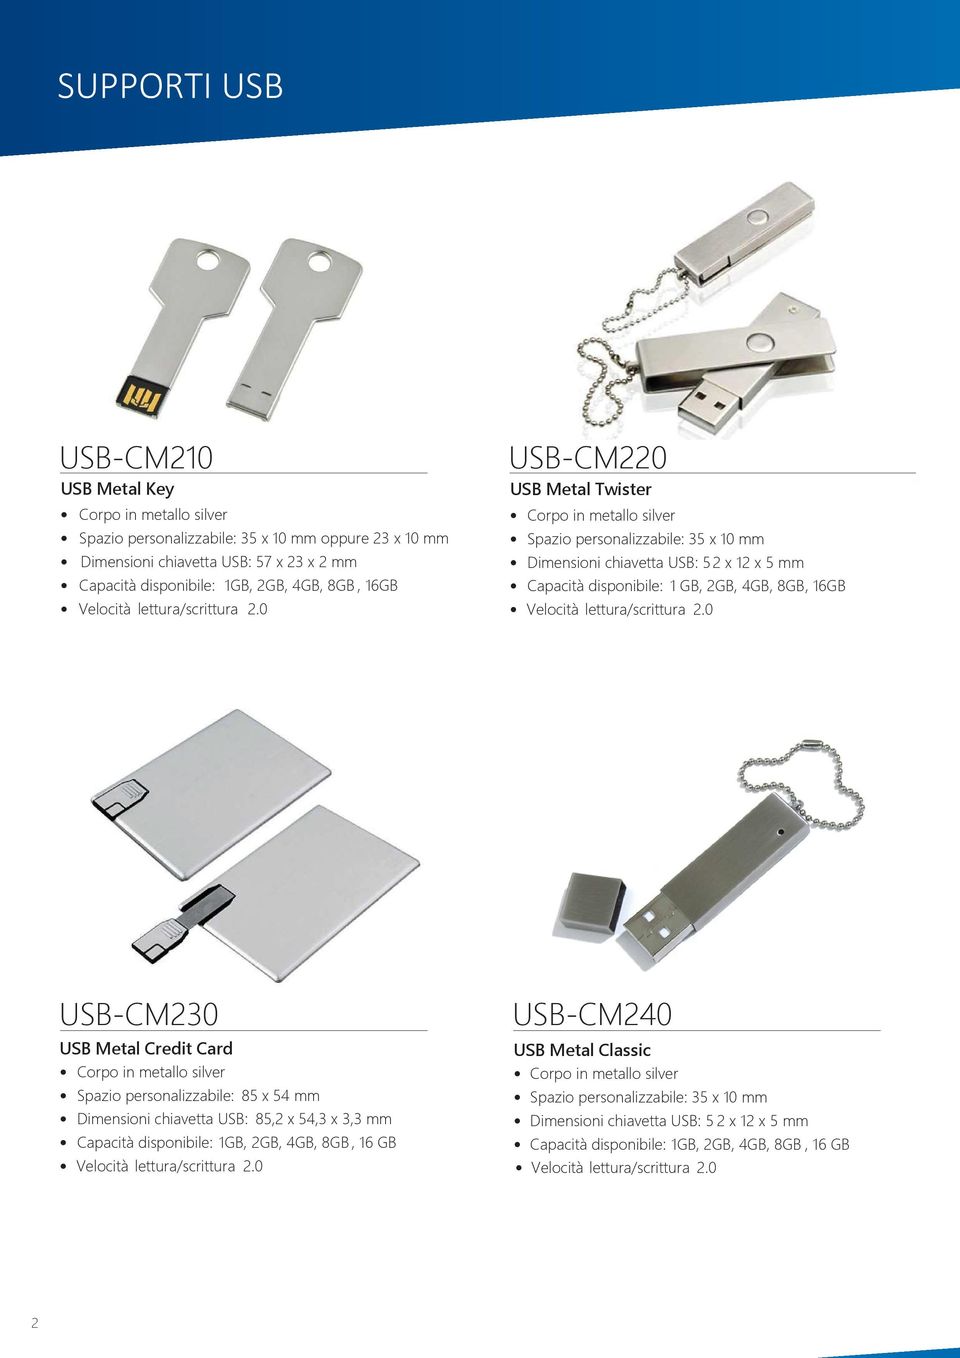 0 USB-CM220 USB Metal Twister Corpo in metallo silver Spazio personalizzabile: 35 x 10 mm Dimensioni chiavetta USB: 5 2 x 12 x 5 mm Capacità disponibile: 1 GB, 2GB, 4GB, 8GB, 0 USB-CM230 USB Metal